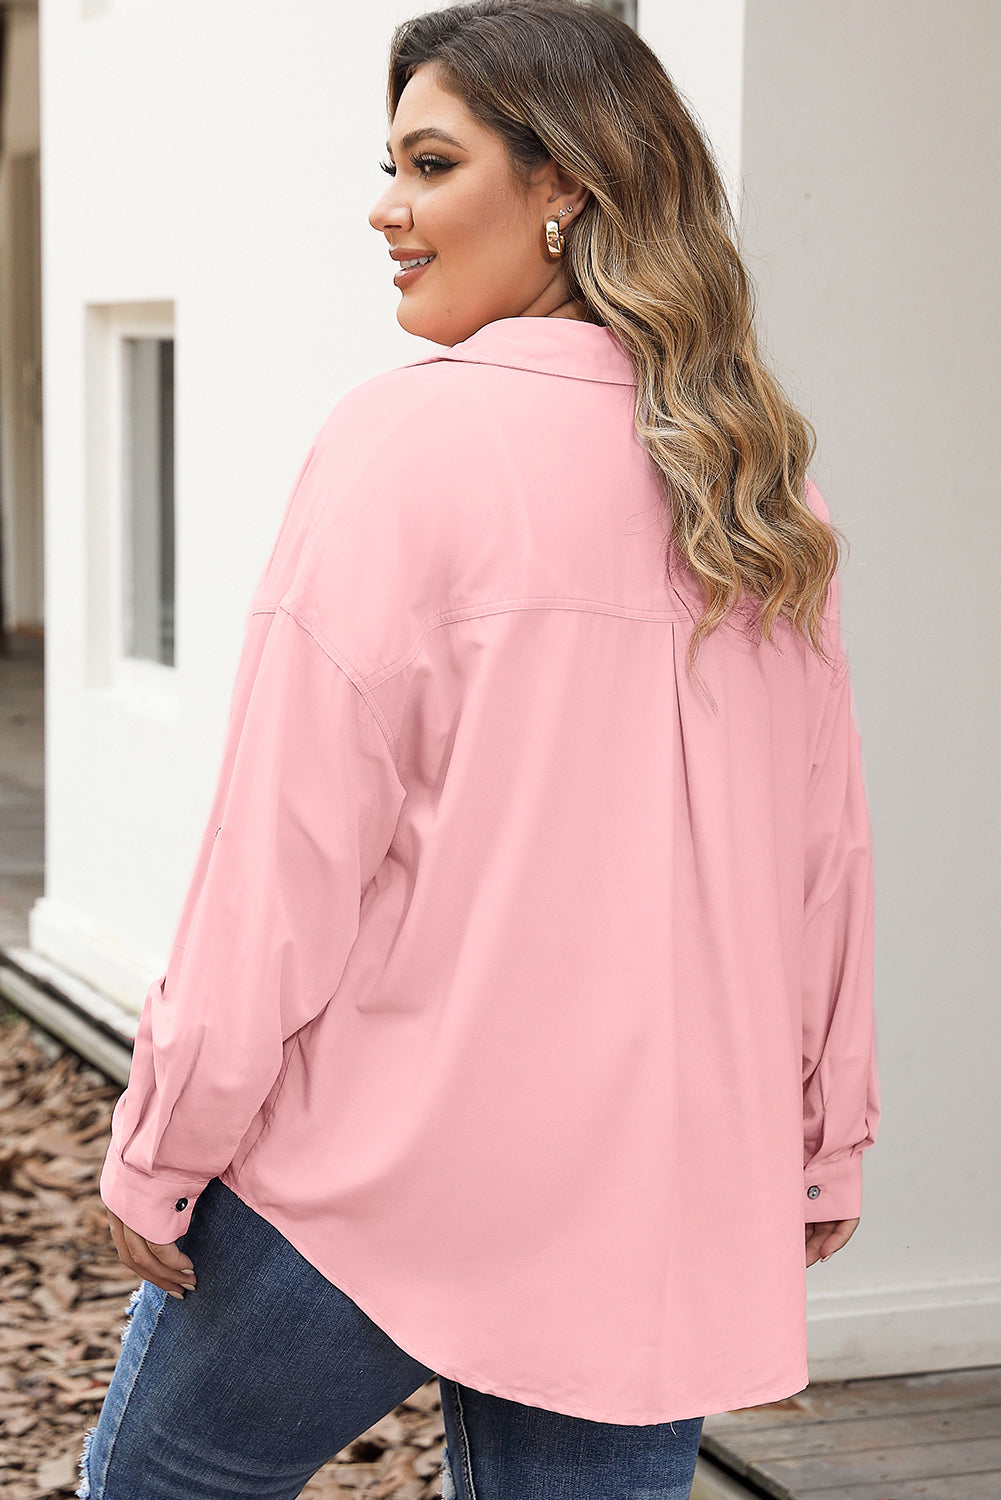 Rožnata majica velike velikosti z žepnimi rokavi in ​​gumbi